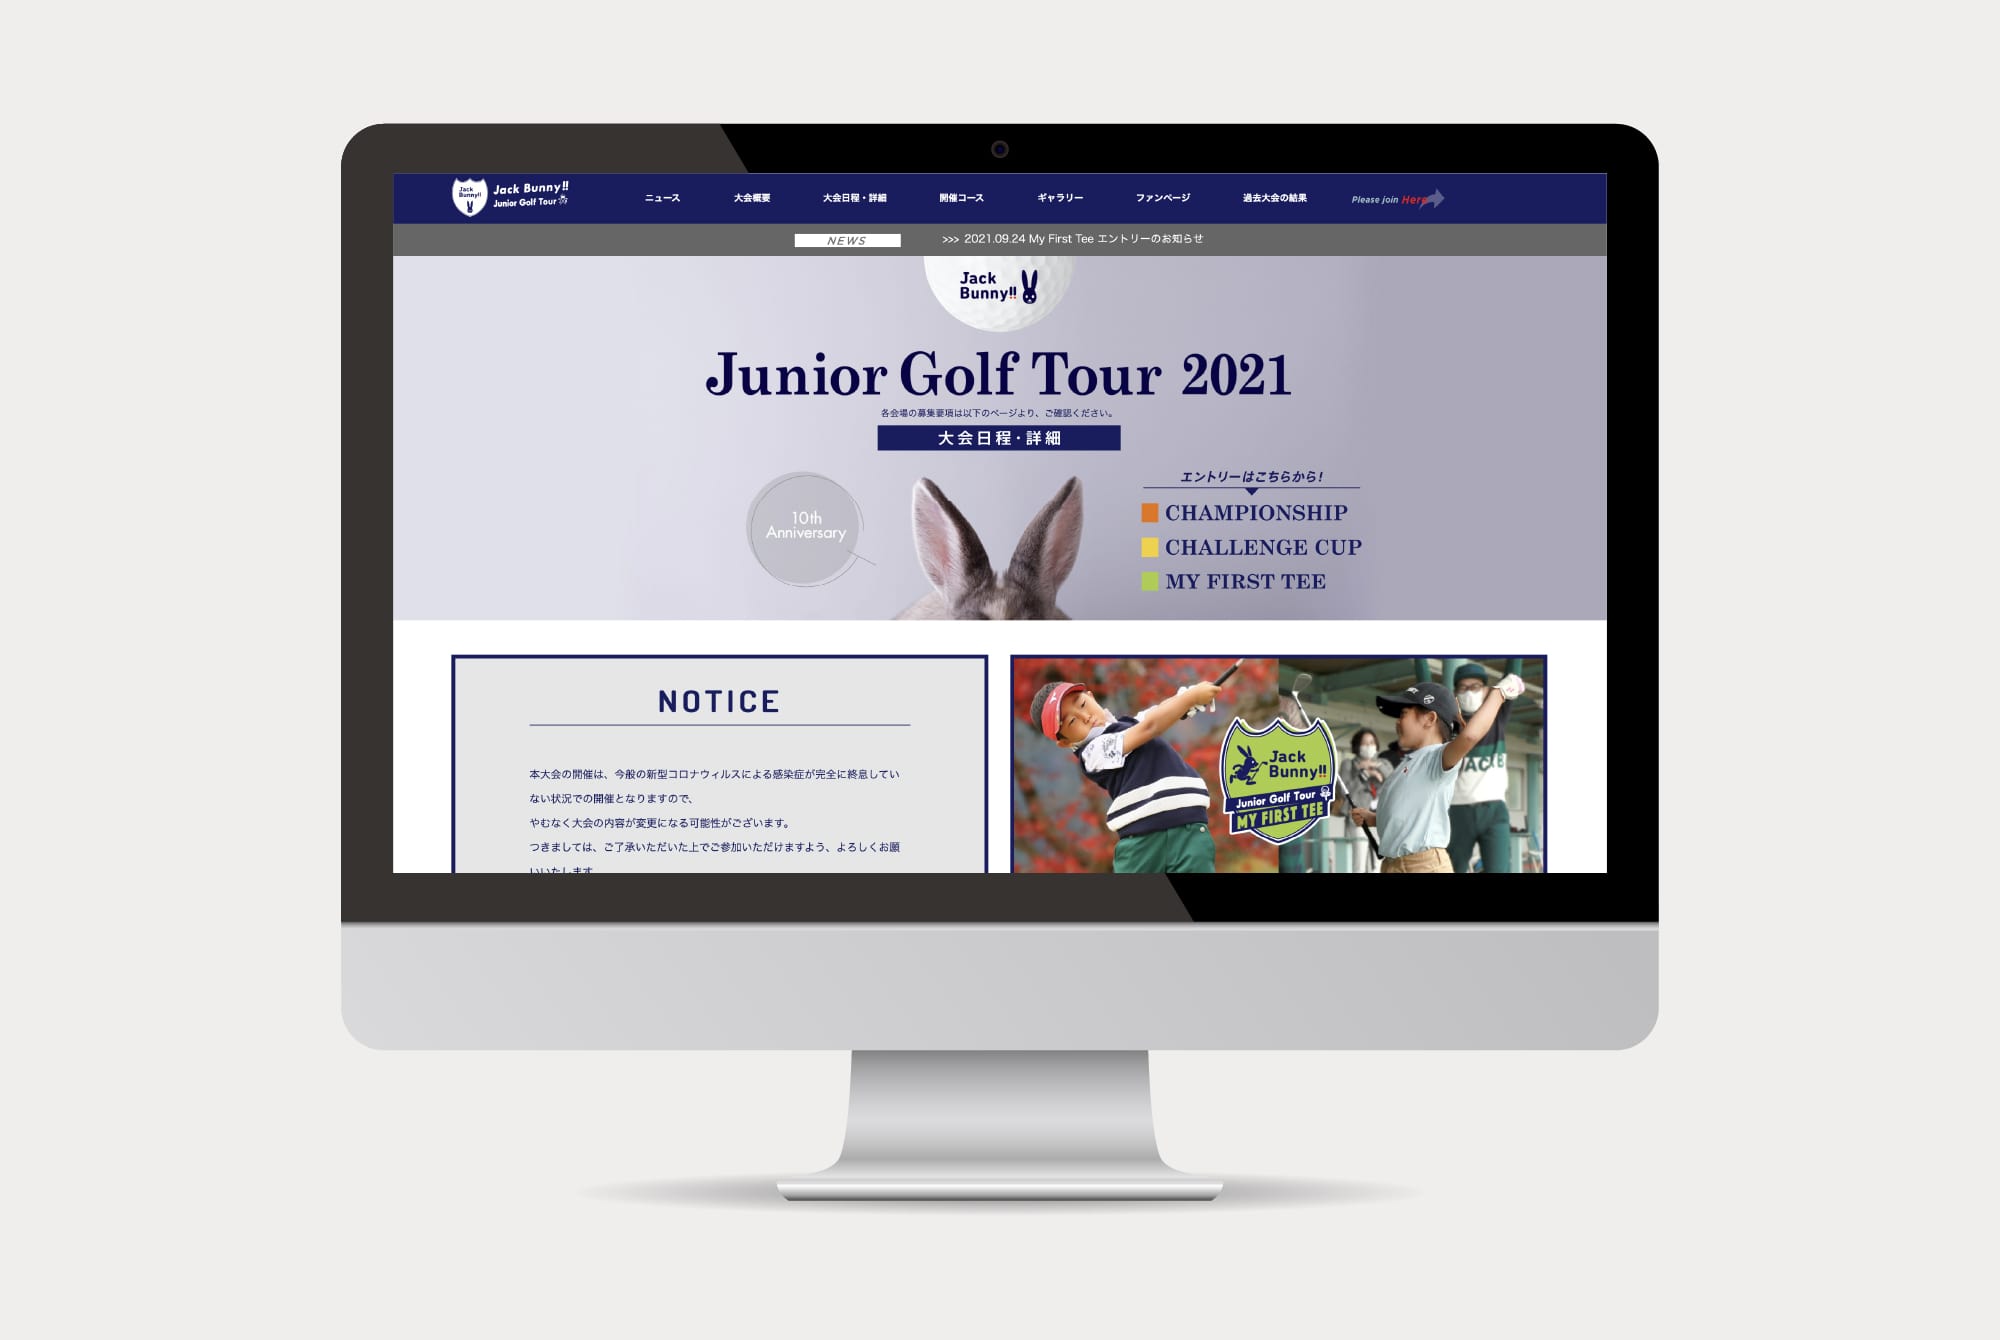 ジャックバニージュニアゴルフツアー2021ホームページ 